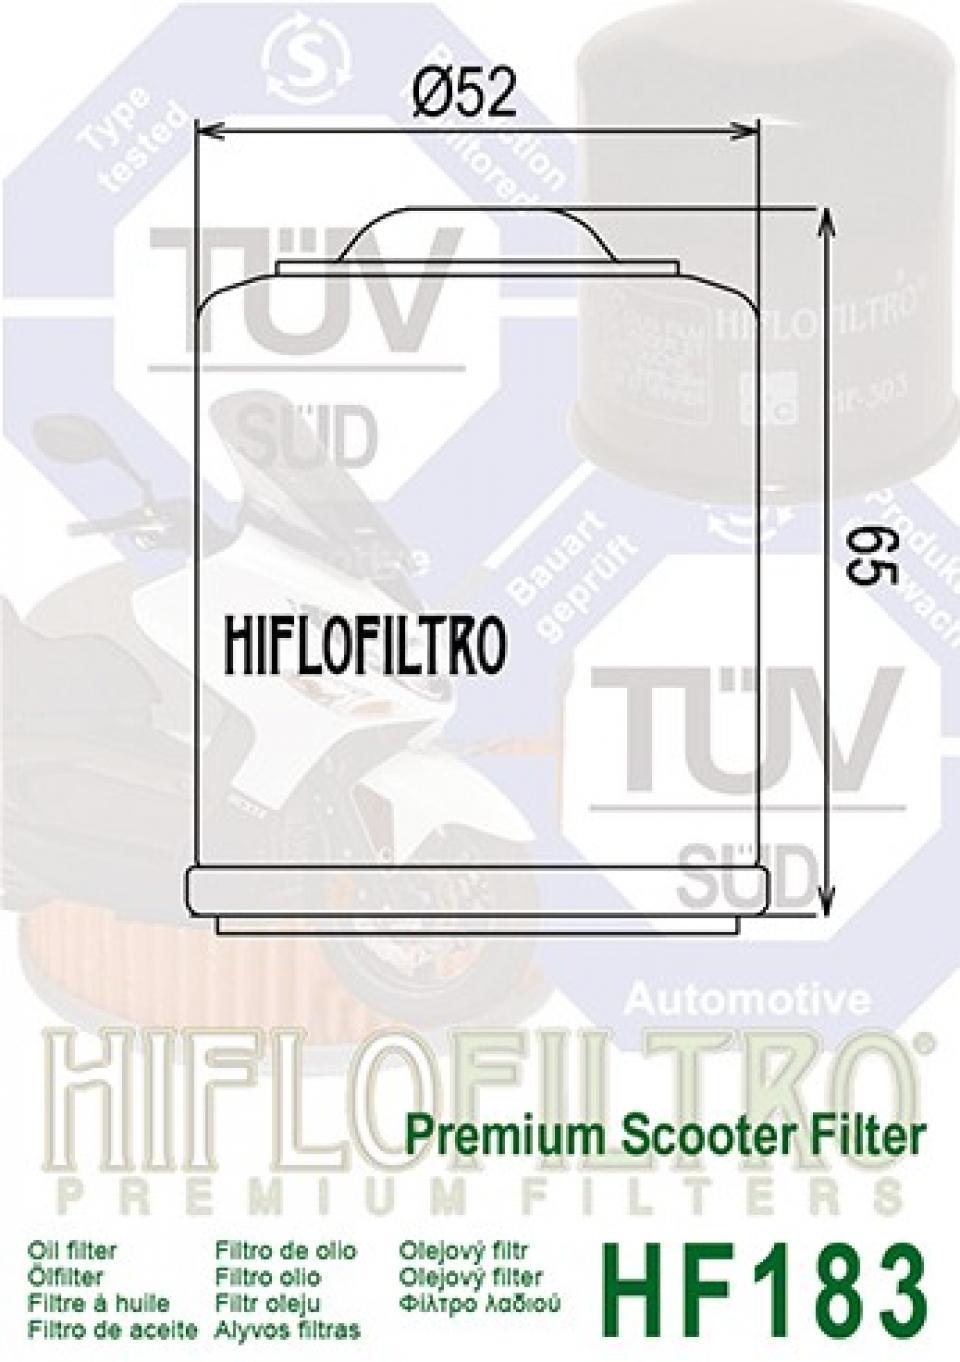 Filtre à huile Hiflofiltro pour Scooter Peugeot 300 Satelis 2011 à 2014 Neuf